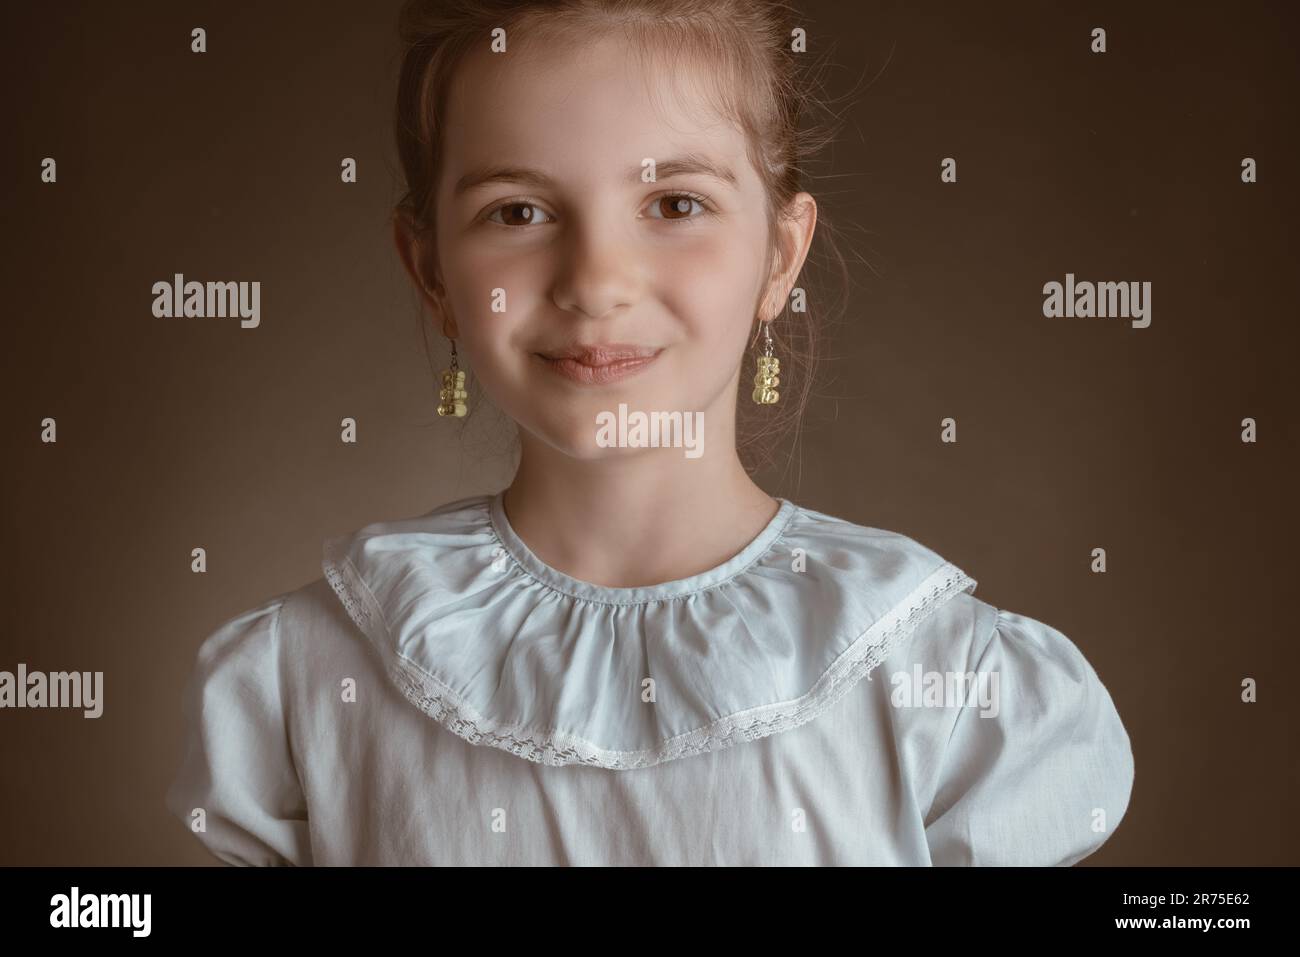 Wunderschönes, kluges Mädchen, Studioporträt auf braunem Hintergrund Stockfoto